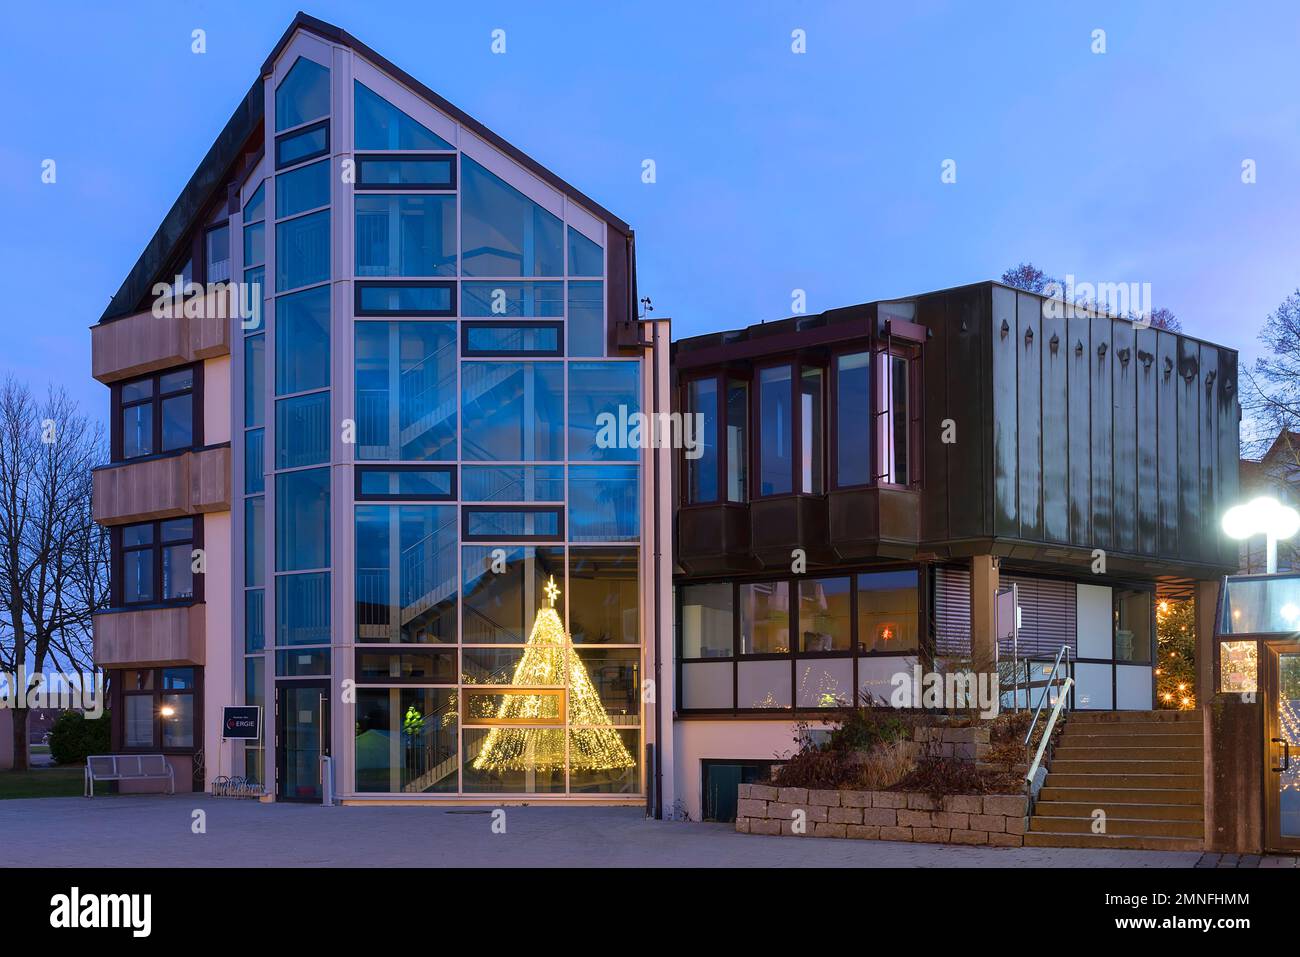 Hôtel de ville dans la lumière du soir avec reflet d'une fontaine de Noël illuminée, Eckental, moyenne-Franconie, Bavière, Allemagne Banque D'Images